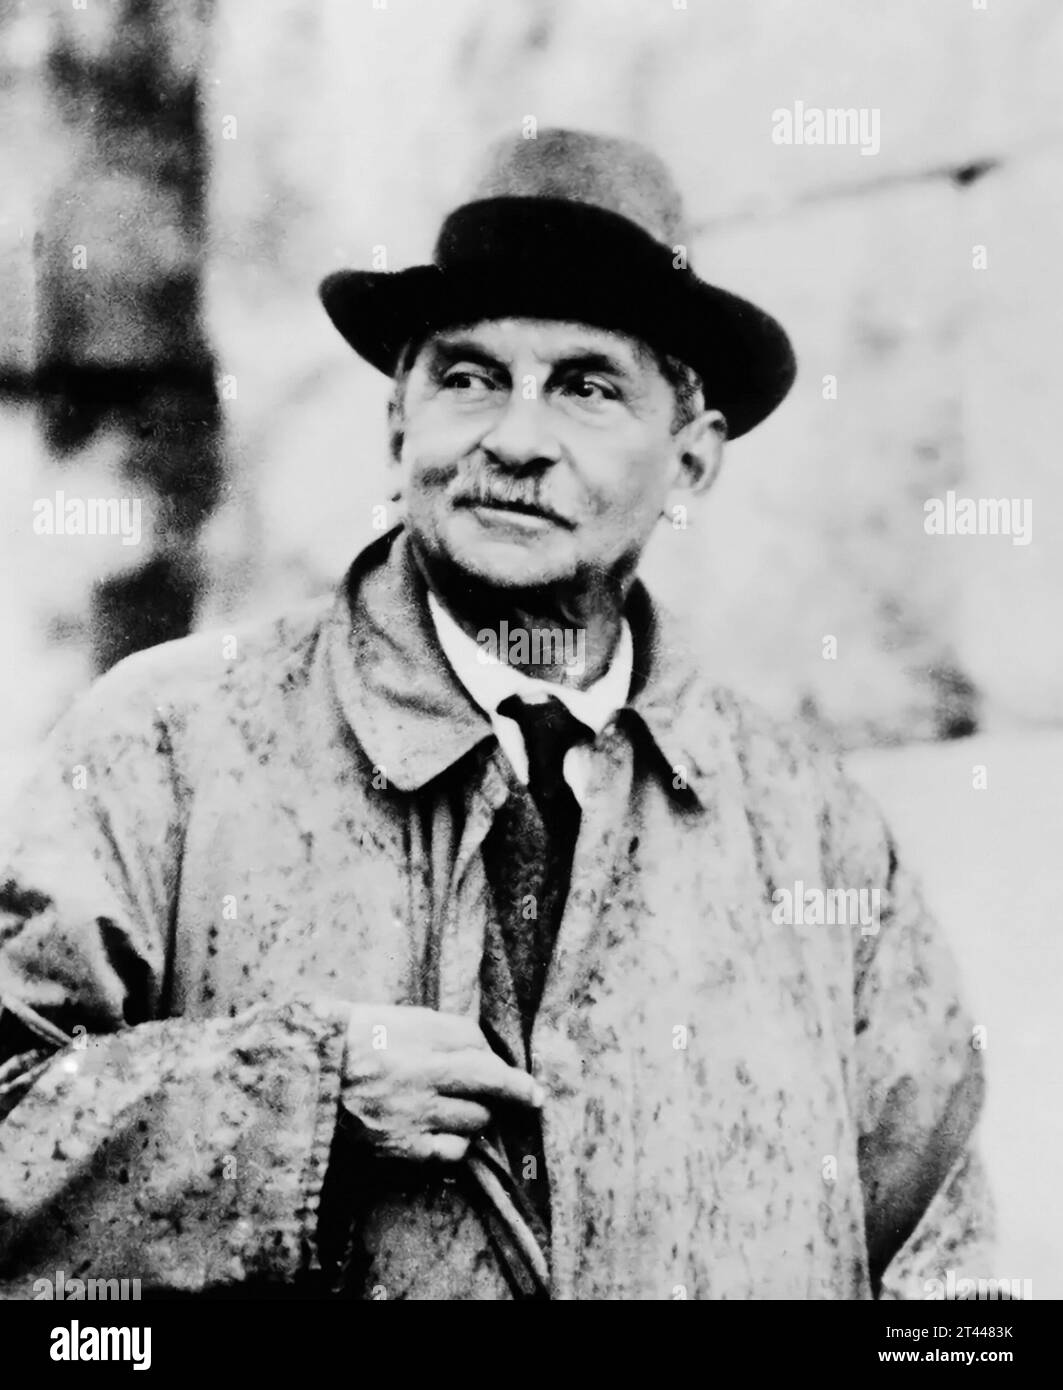 Sir Arthur Evans (1851-1941), portrait c. 1931, photographe inconnu. Arthur Evans est surtout célèbre pour ses fouilles controversées au Palais de Knossos en Crète. Banque D'Images